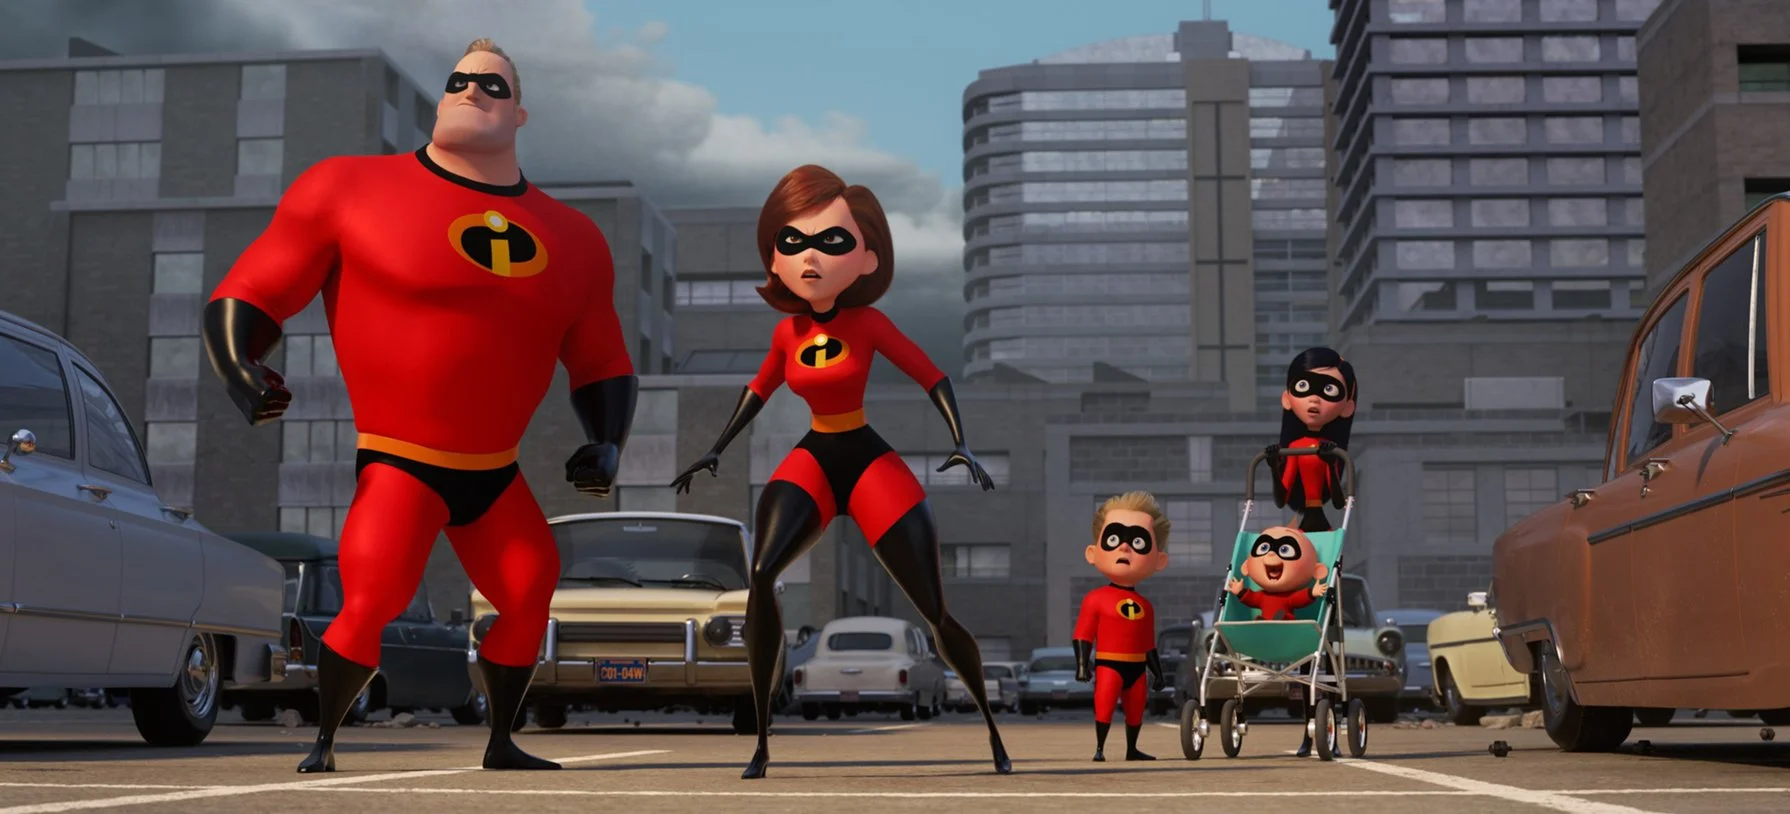 14 июня в кино выходит новый мультфильм от студии Pixar — The Incredibles 2 (у нас — «Суперсемейка 2»), продолжение главного супергеройского проекта студии, выпущенного в 2004 году. То есть сиквела мы ждали 14 лет — случай уникальный как для супергеройского фикшена, так и анимации.  Мне уже удалось посмотреть мультфильм на пресс-показе, и в этом материале я расскажу о своих впечатлениях от возвращения семьи Парр.